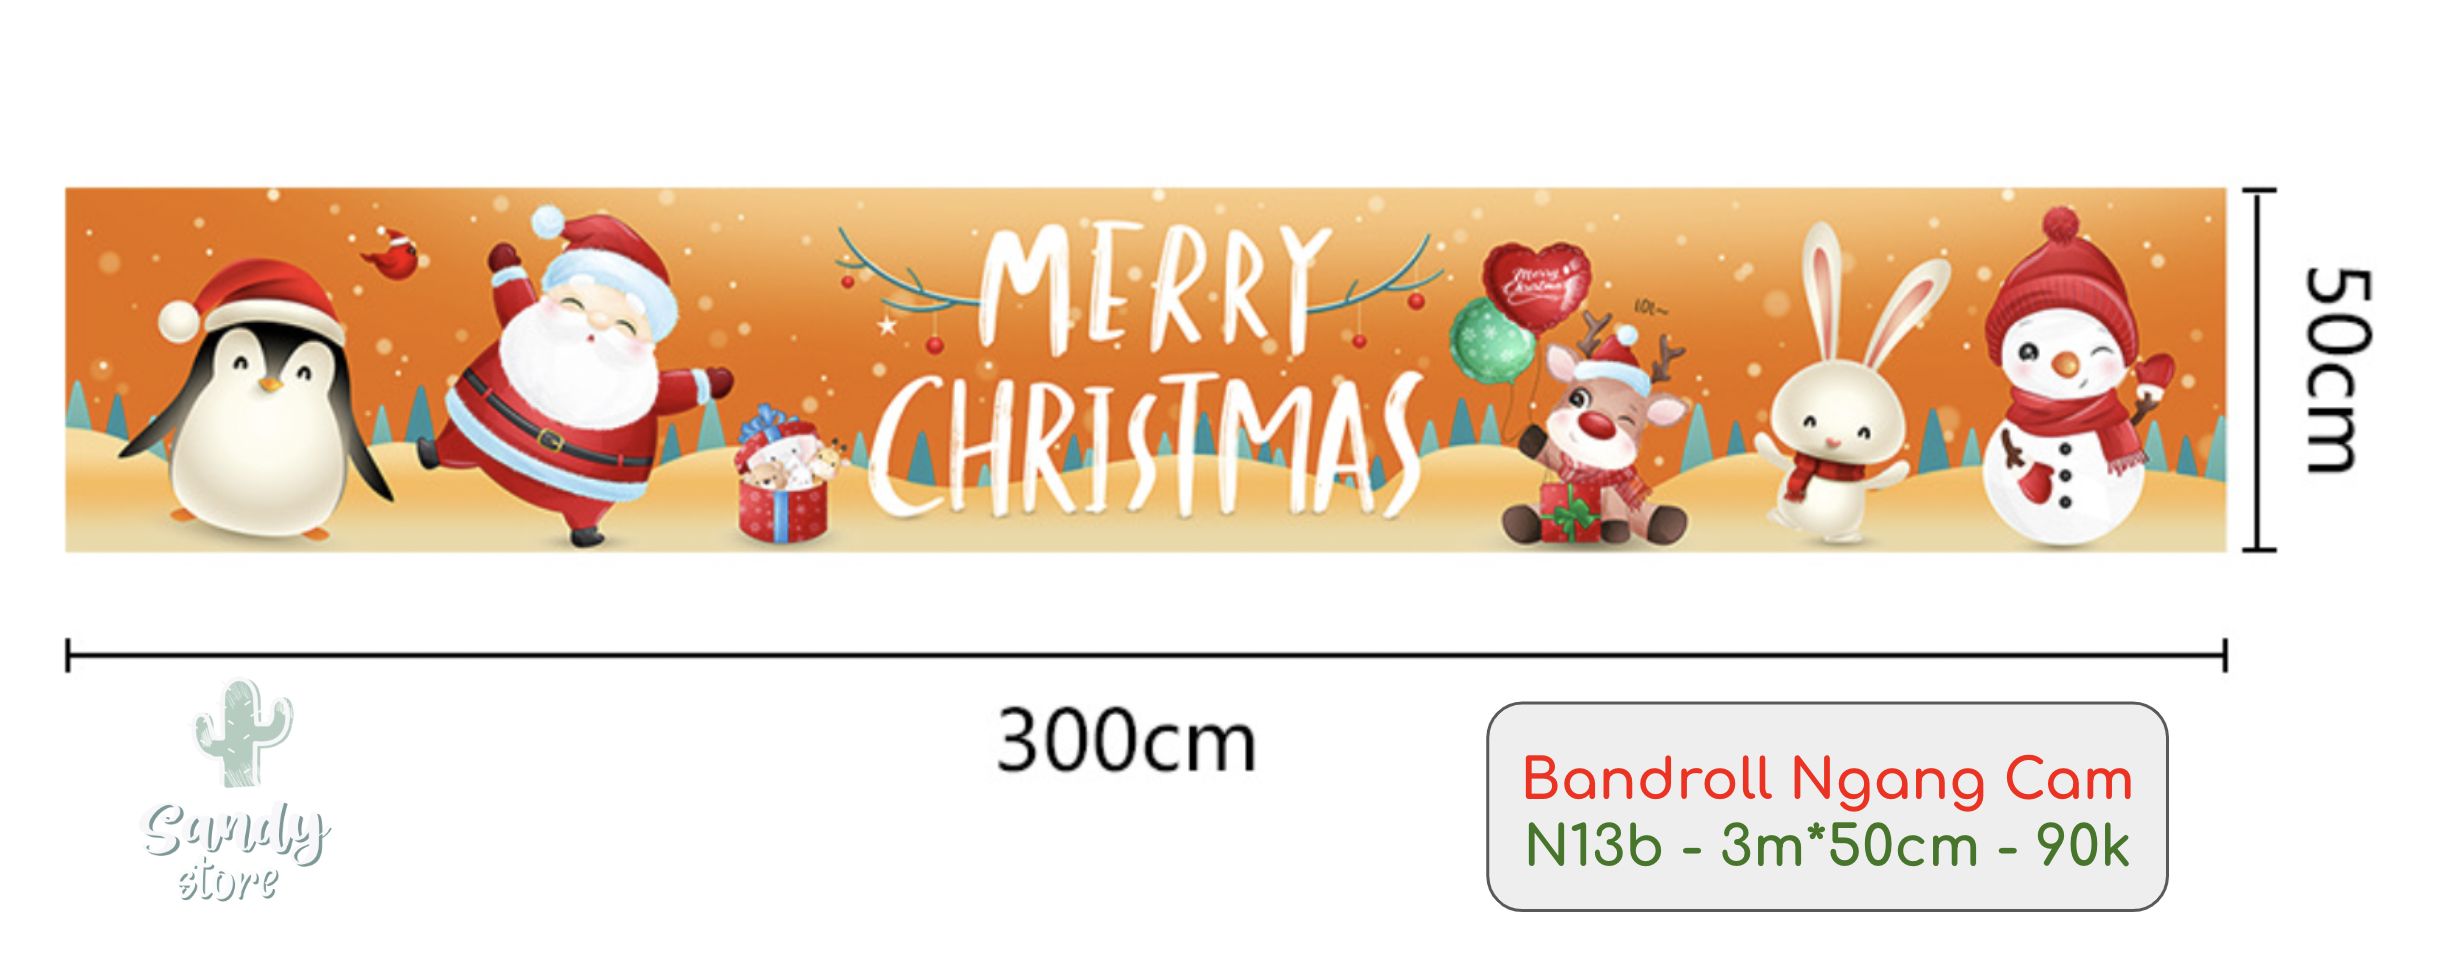 N13b - Bandroll Ngang Cam (3m*50cm)